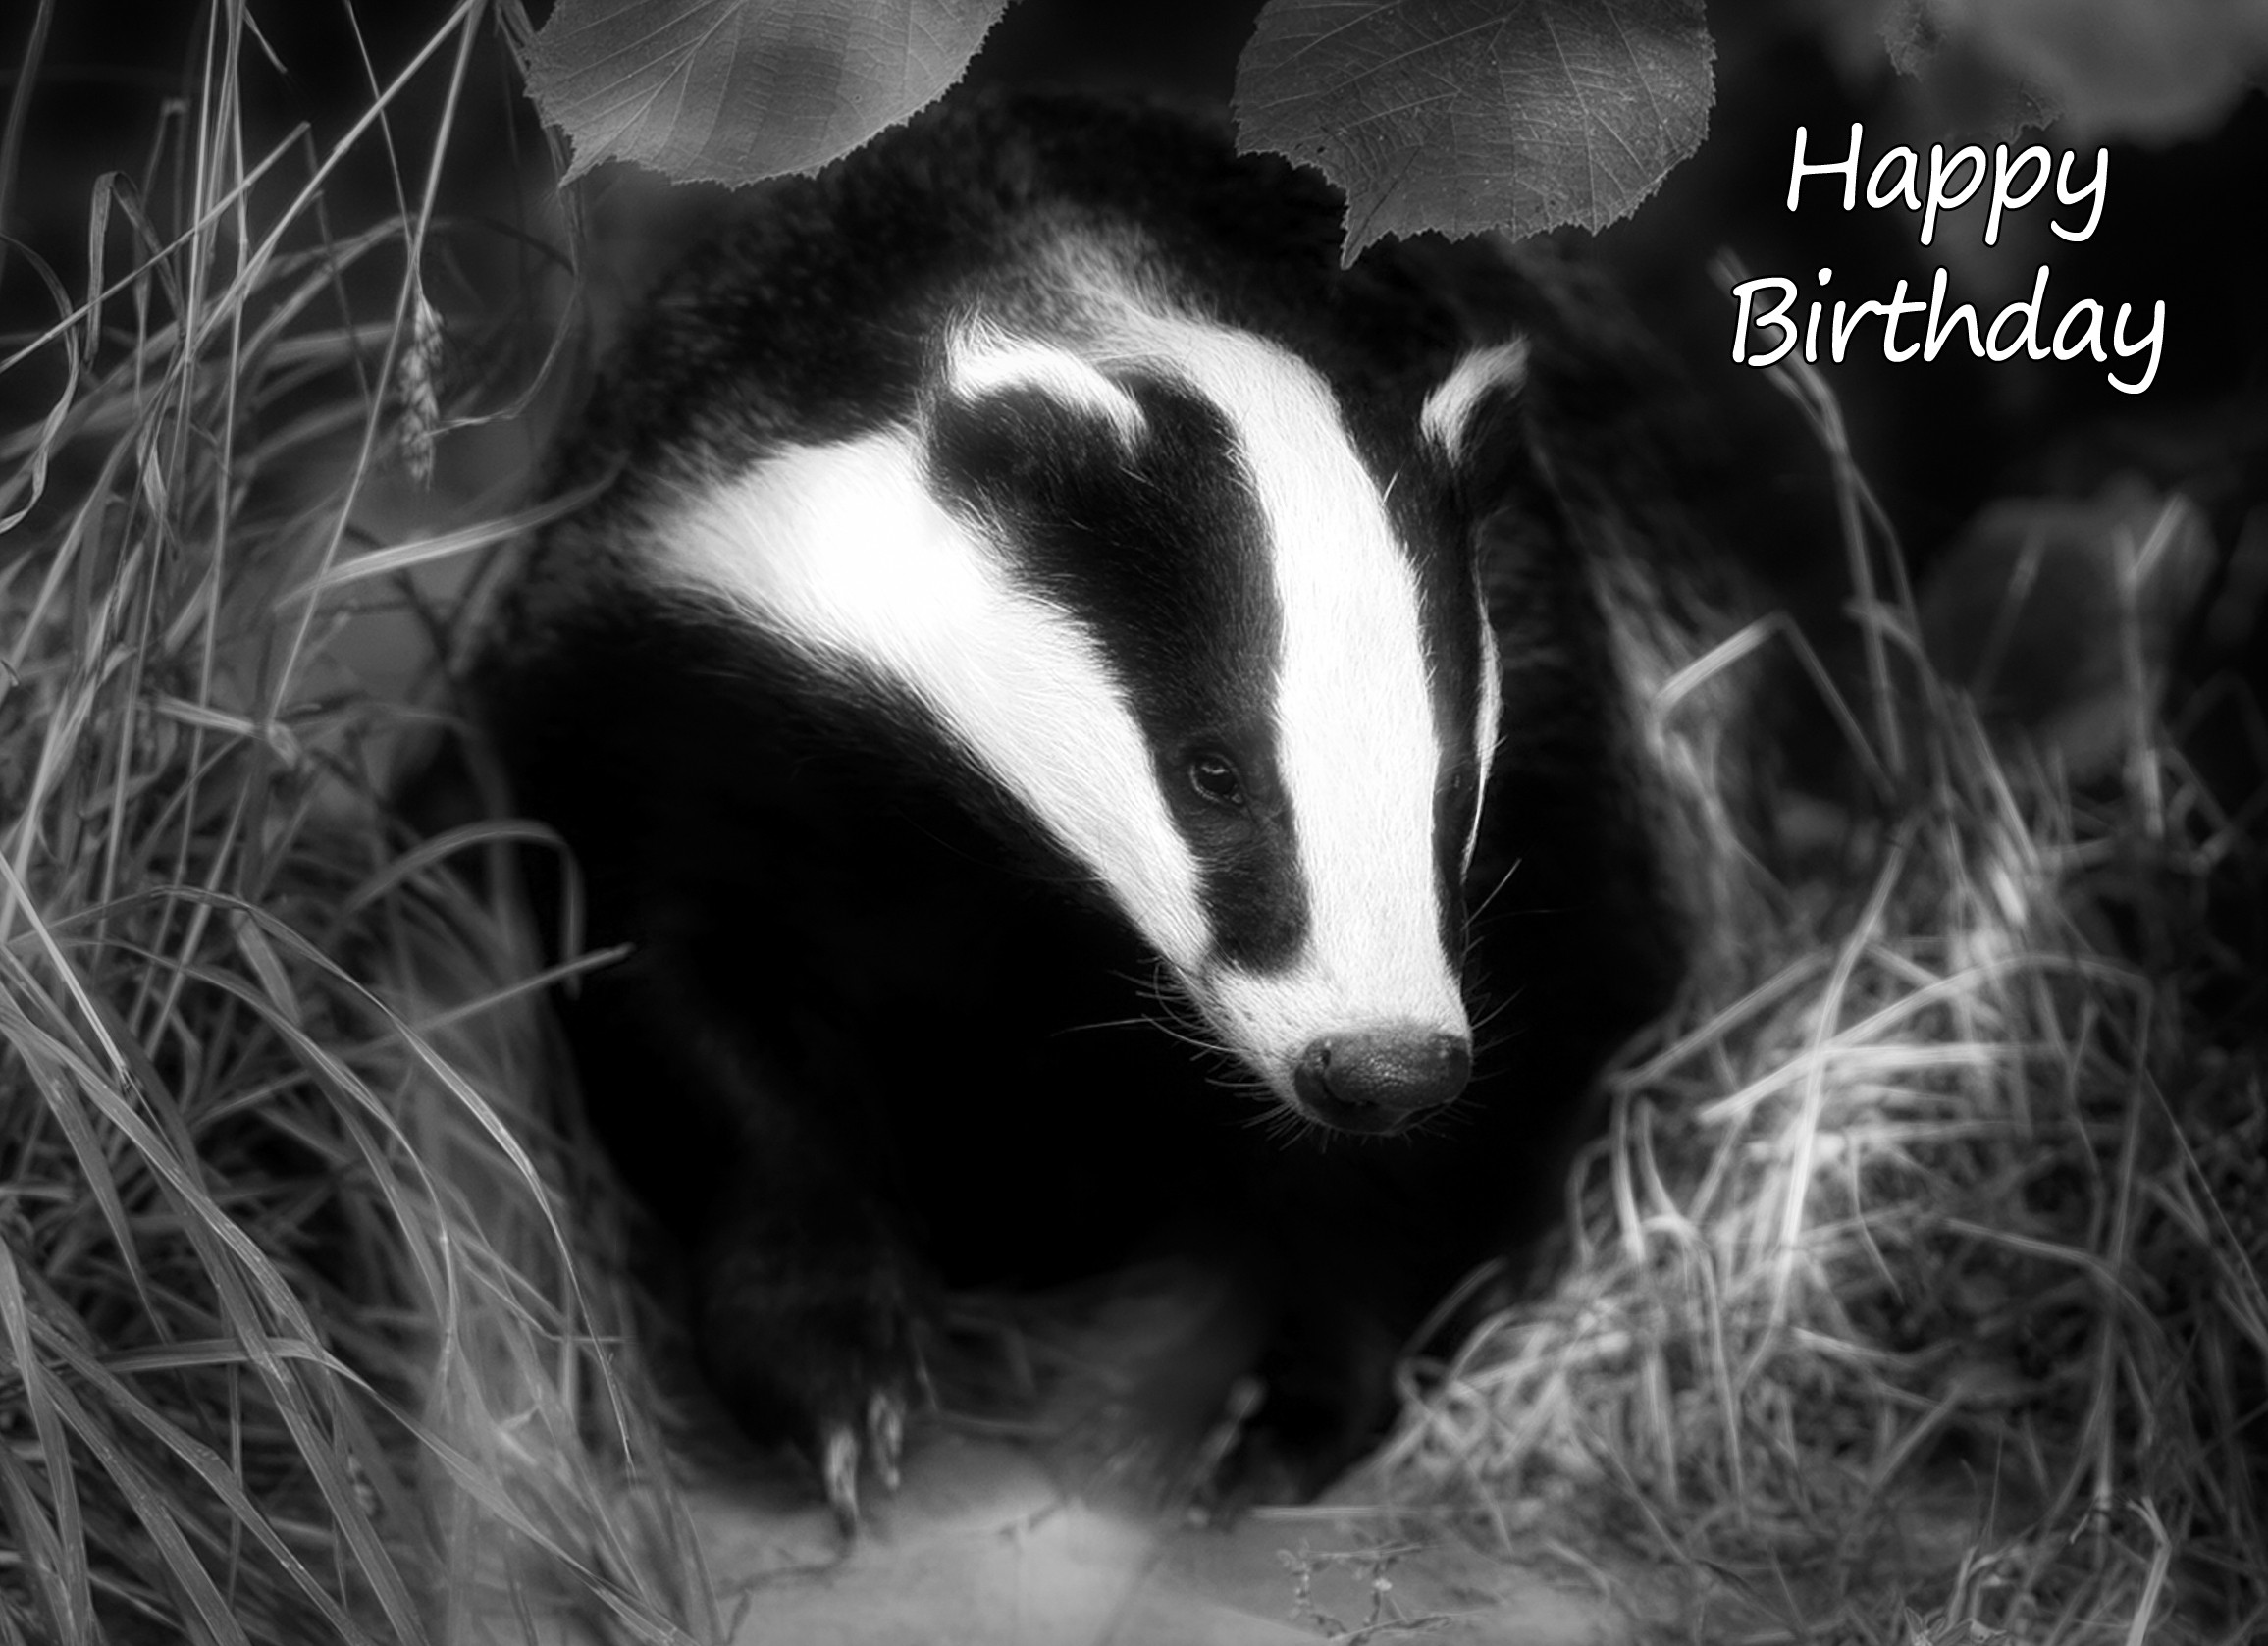 Badger Black and White Art Birthday Card